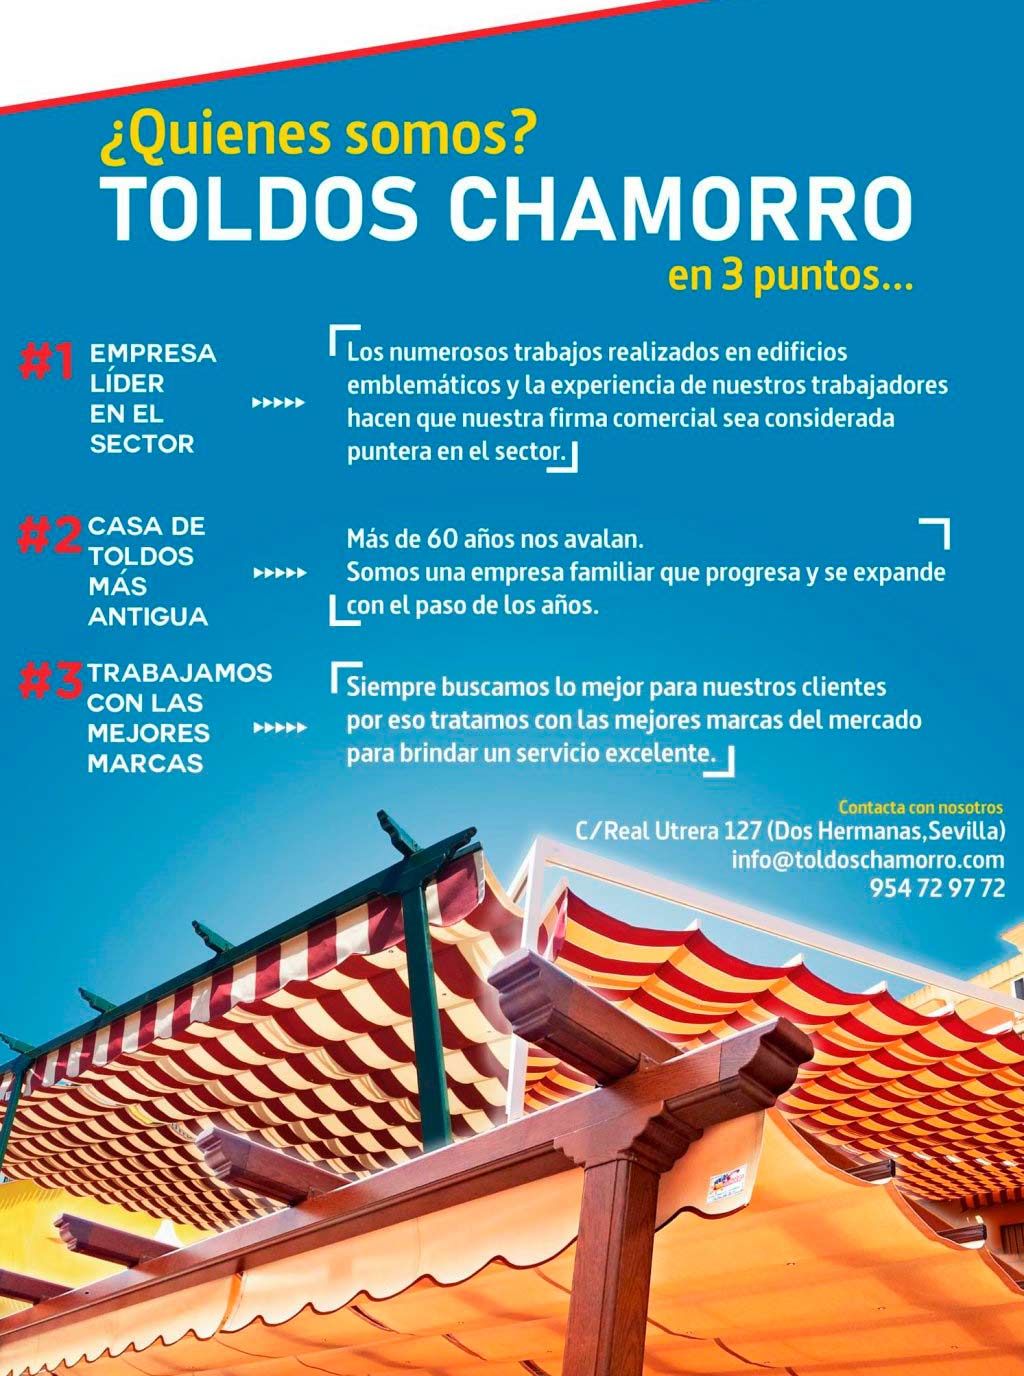 Toldos Chamorro historia toldos chamorro